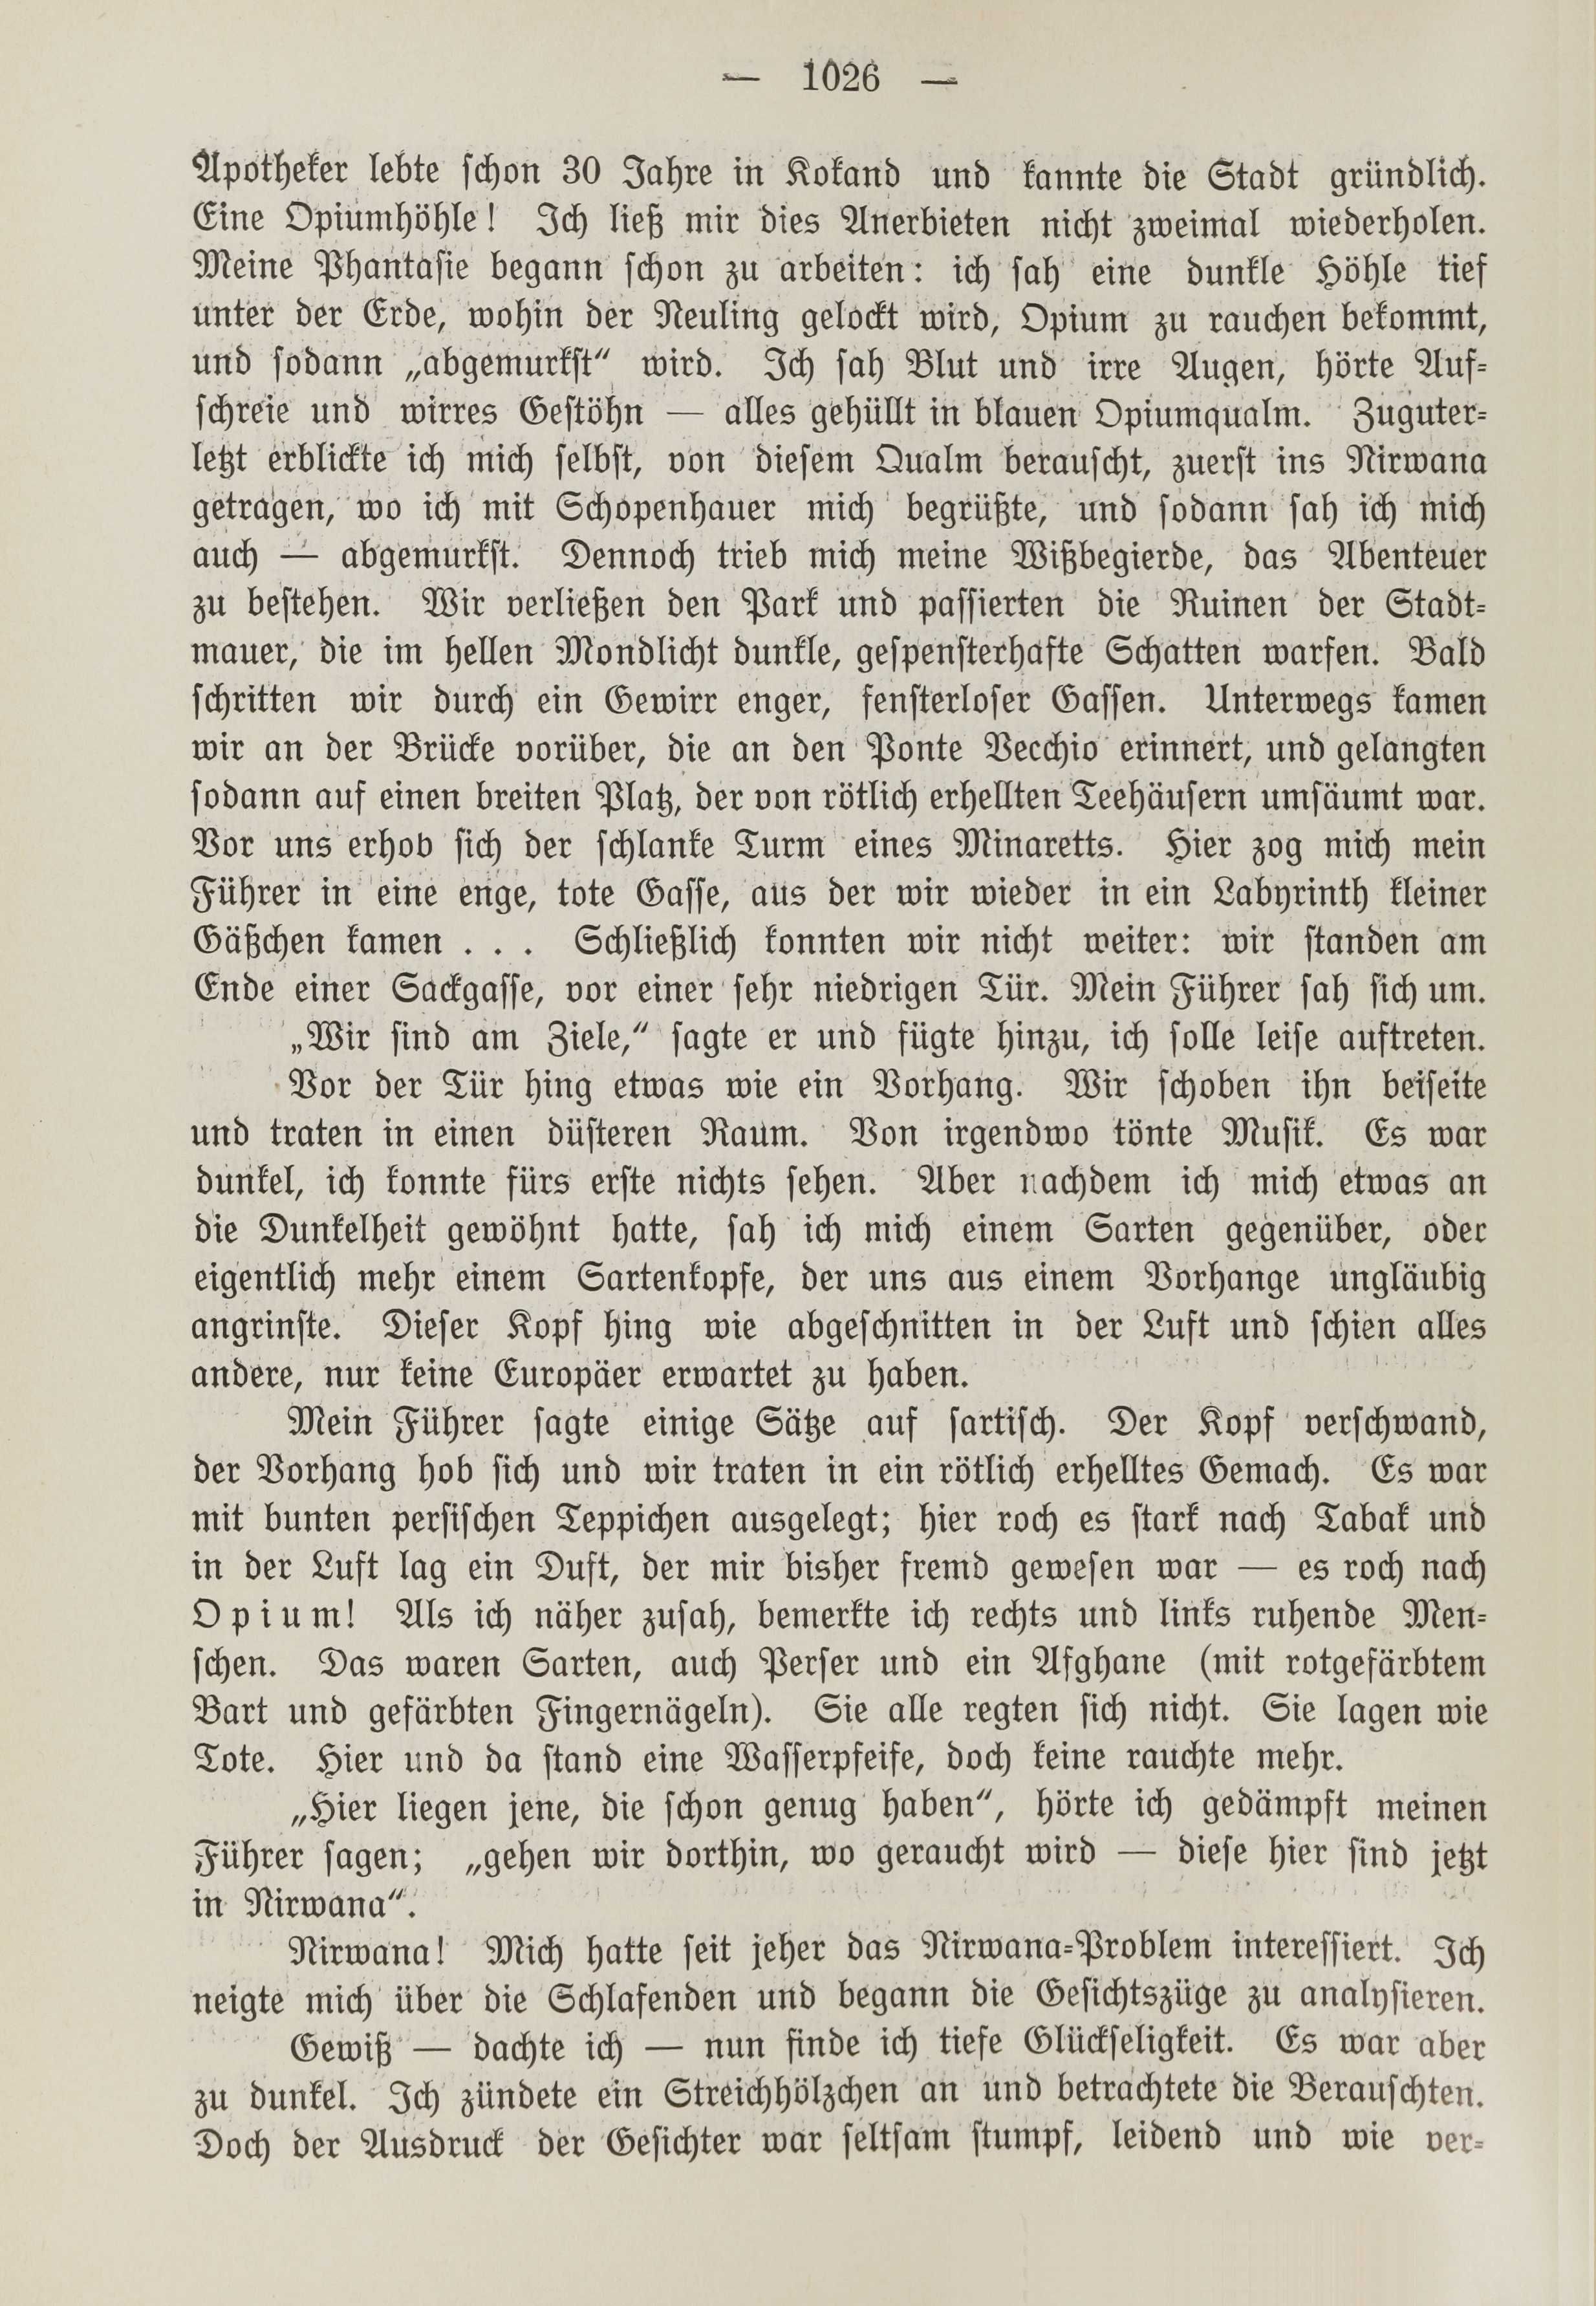 Deutsche Monatsschrift für Russland [1] (1912) | 1034. (1026) Основной текст